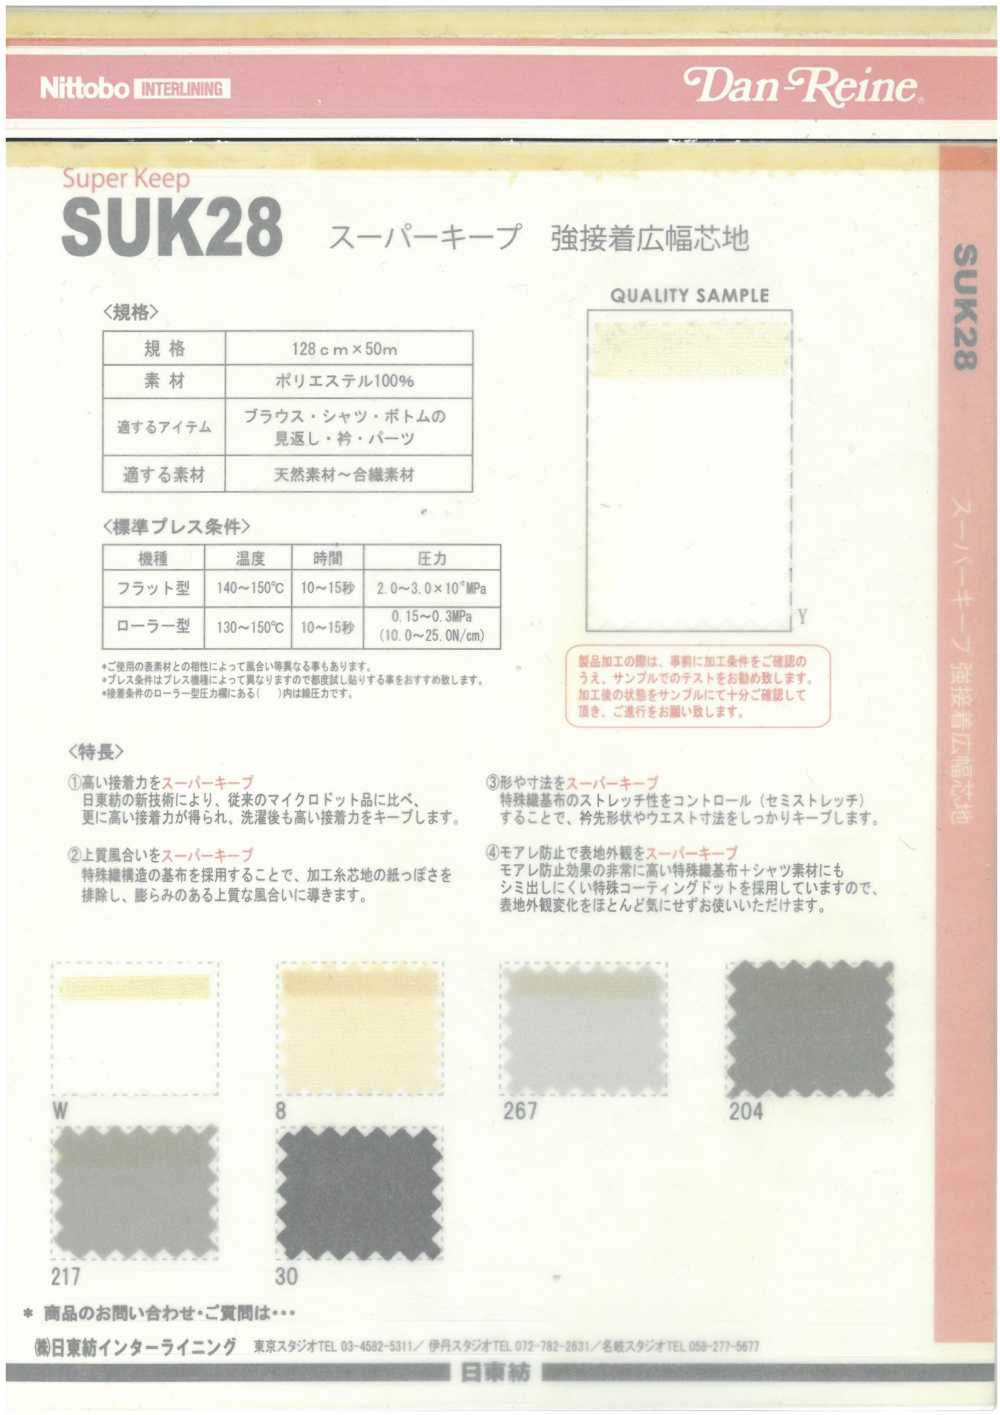 SUK28 슈퍼 유지 강한 접착 광포 심지 닛토보 (닛토보인터라이닝)